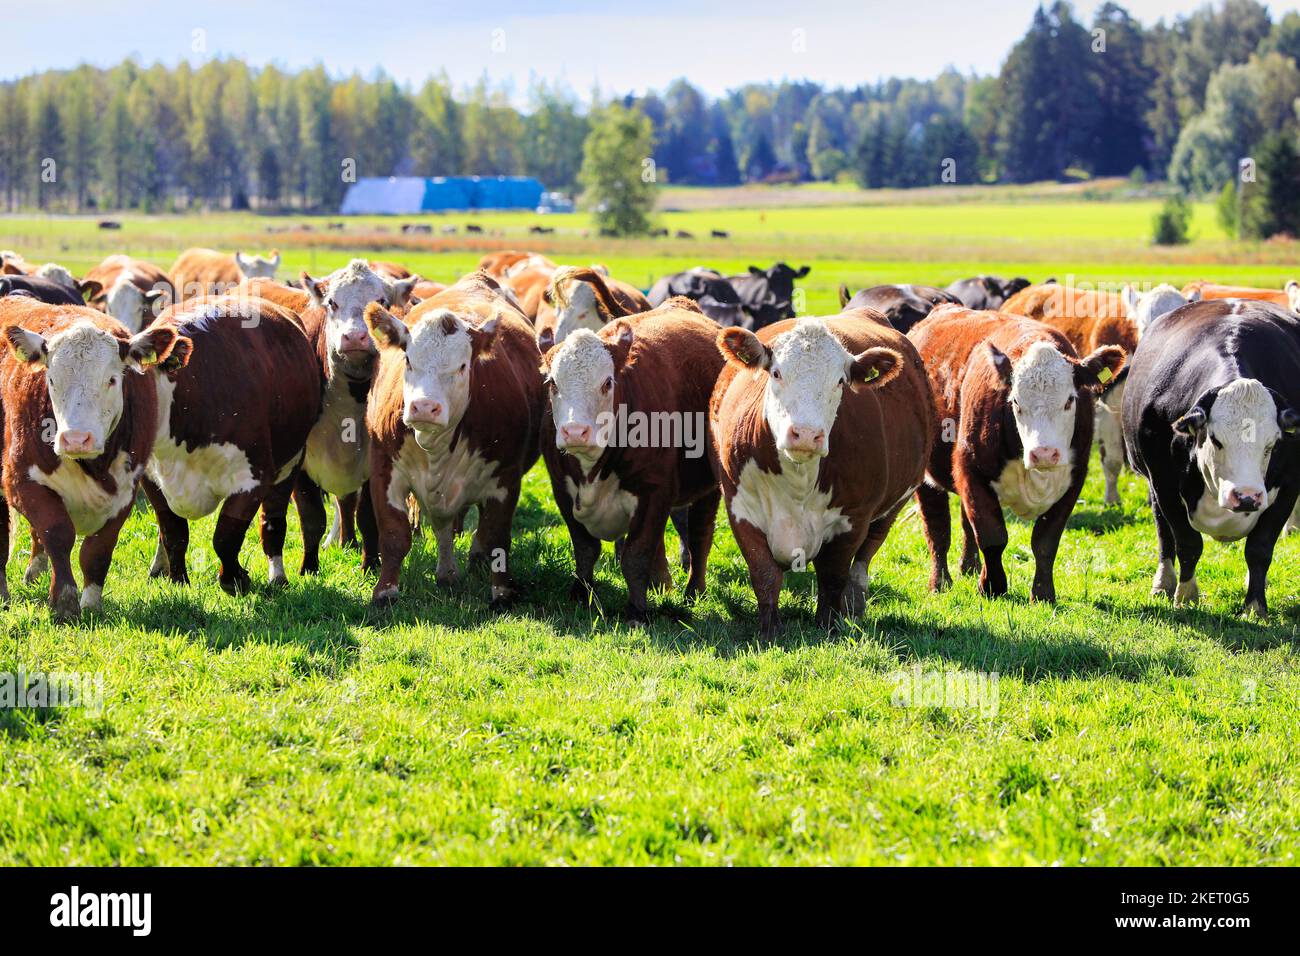 Troupeau de bétail de Hereford en pâturage dans un champ herbacé lors d'une belle journée. Les vaches sont curieux et se déplacent vers la caméra. Banque D'Images